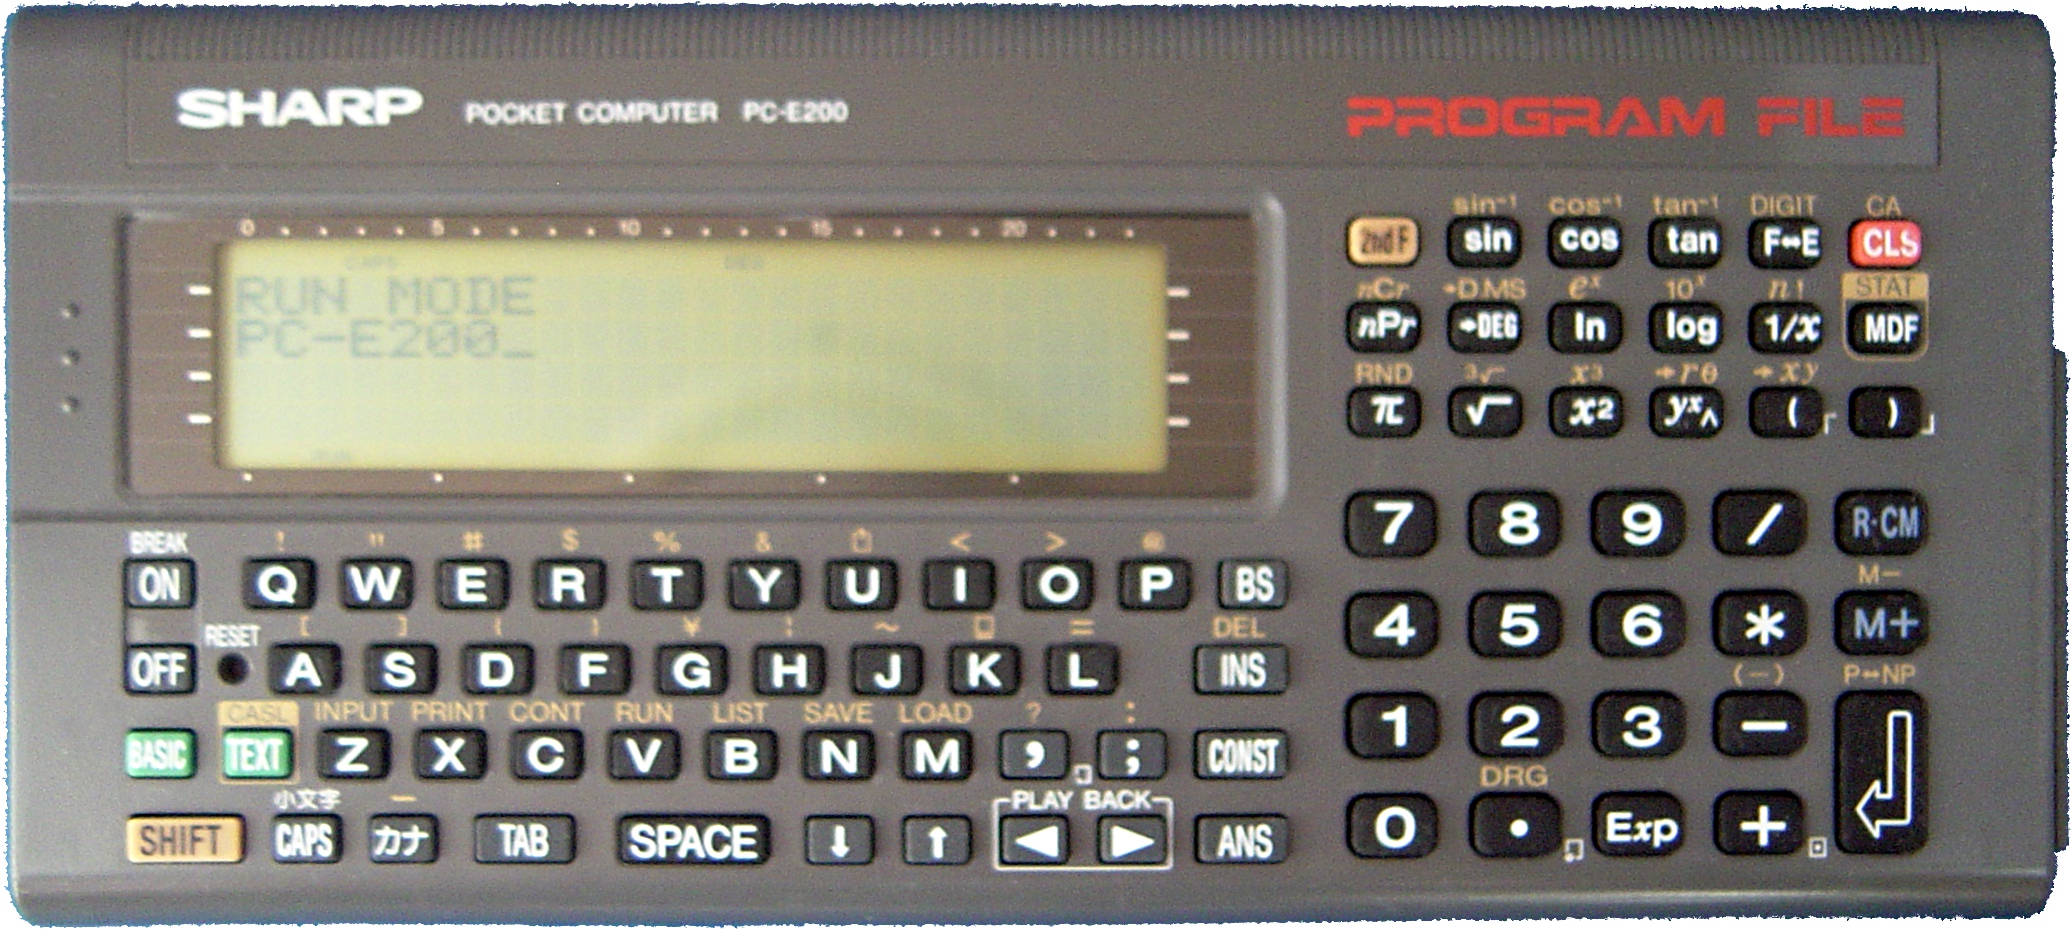 シャープSHARP PC-E200